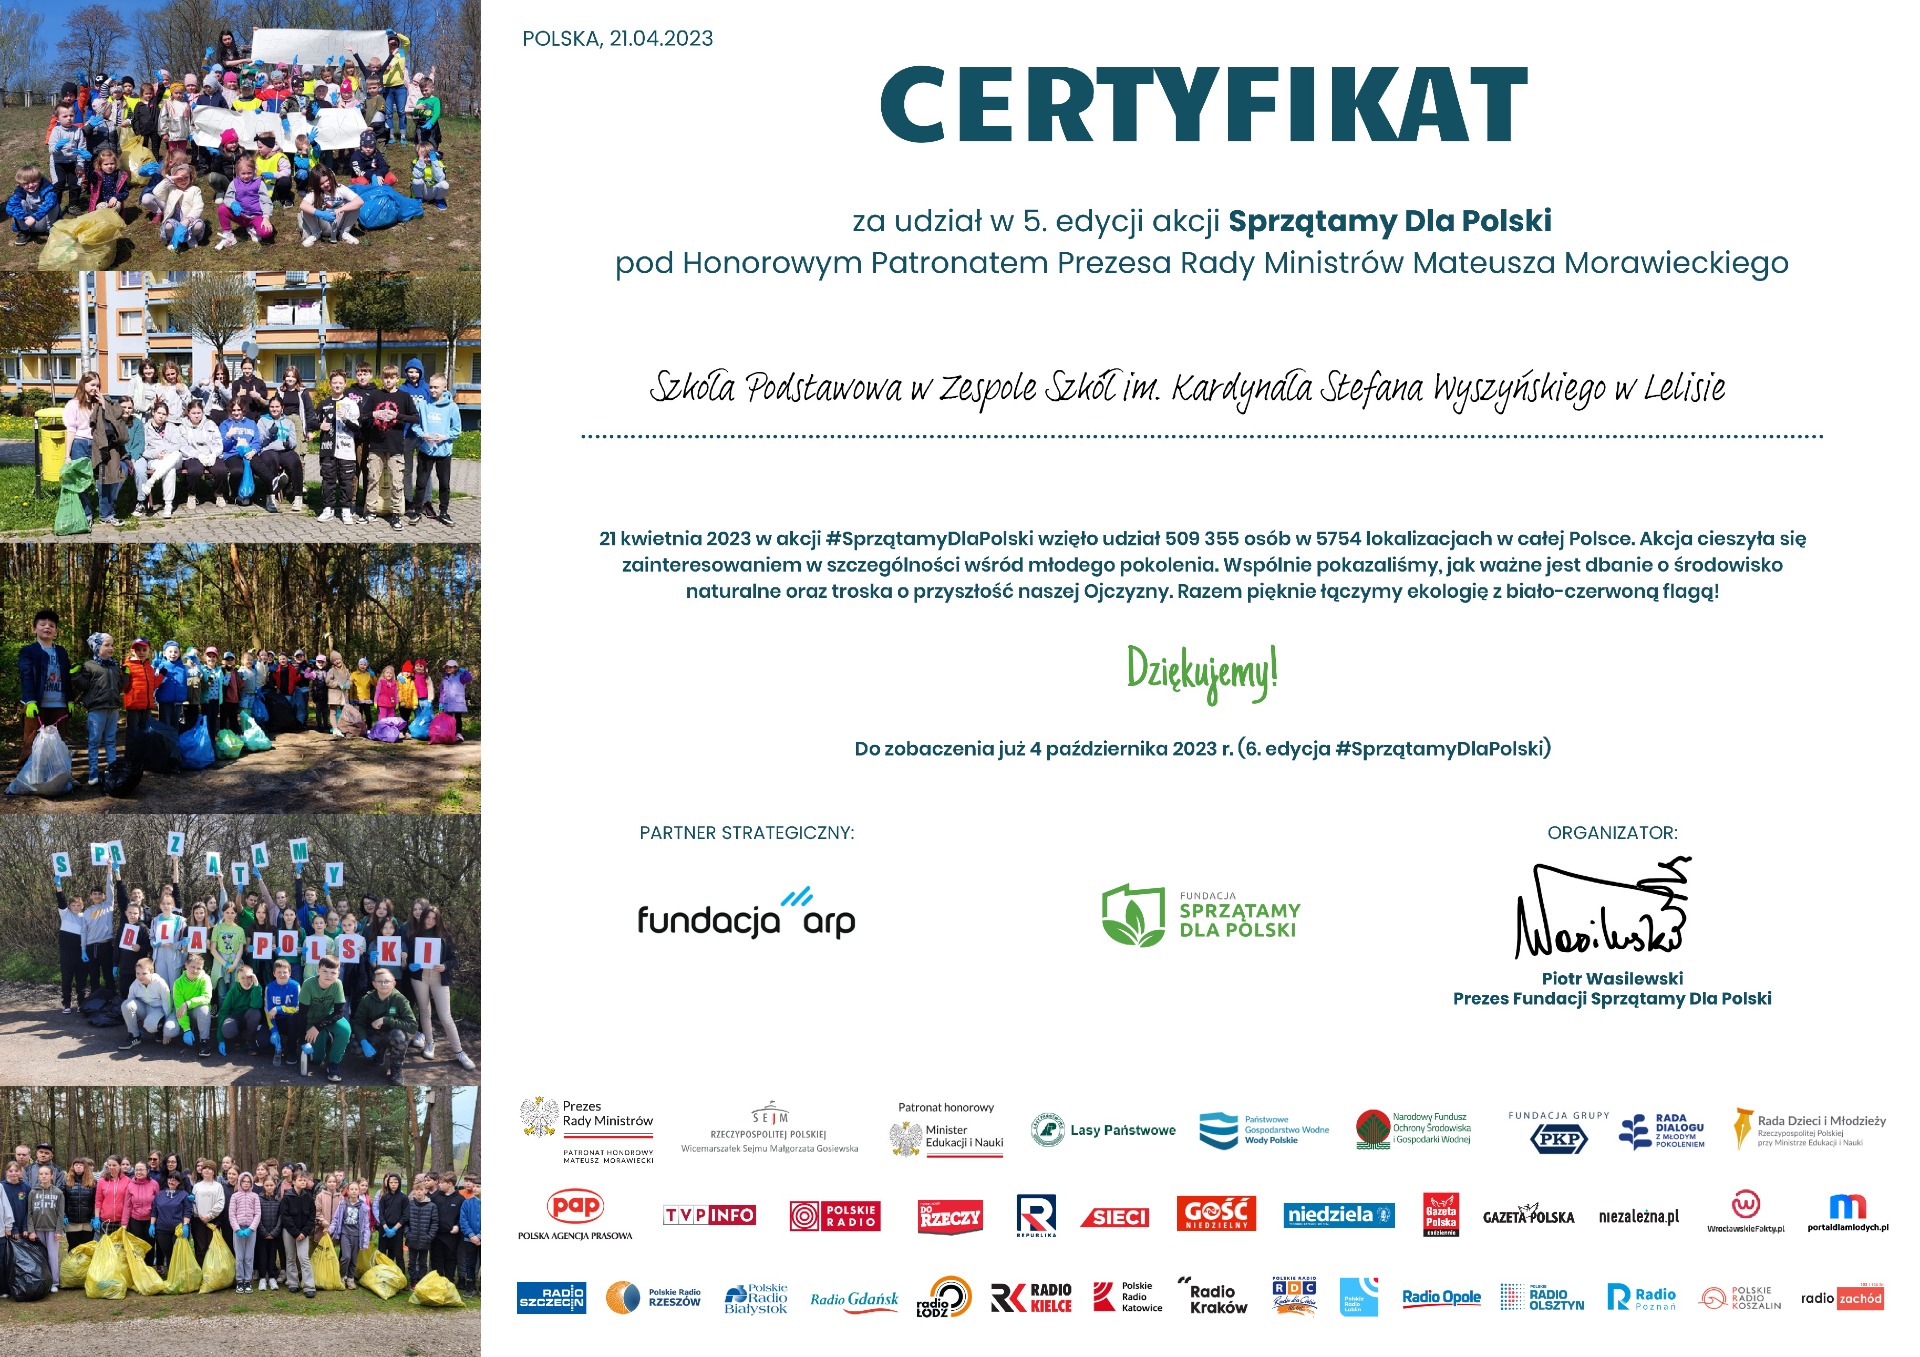 Certyfikat za udział w 5. edycji akcji "Sprzątamy dla Polski" - Obrazek 1